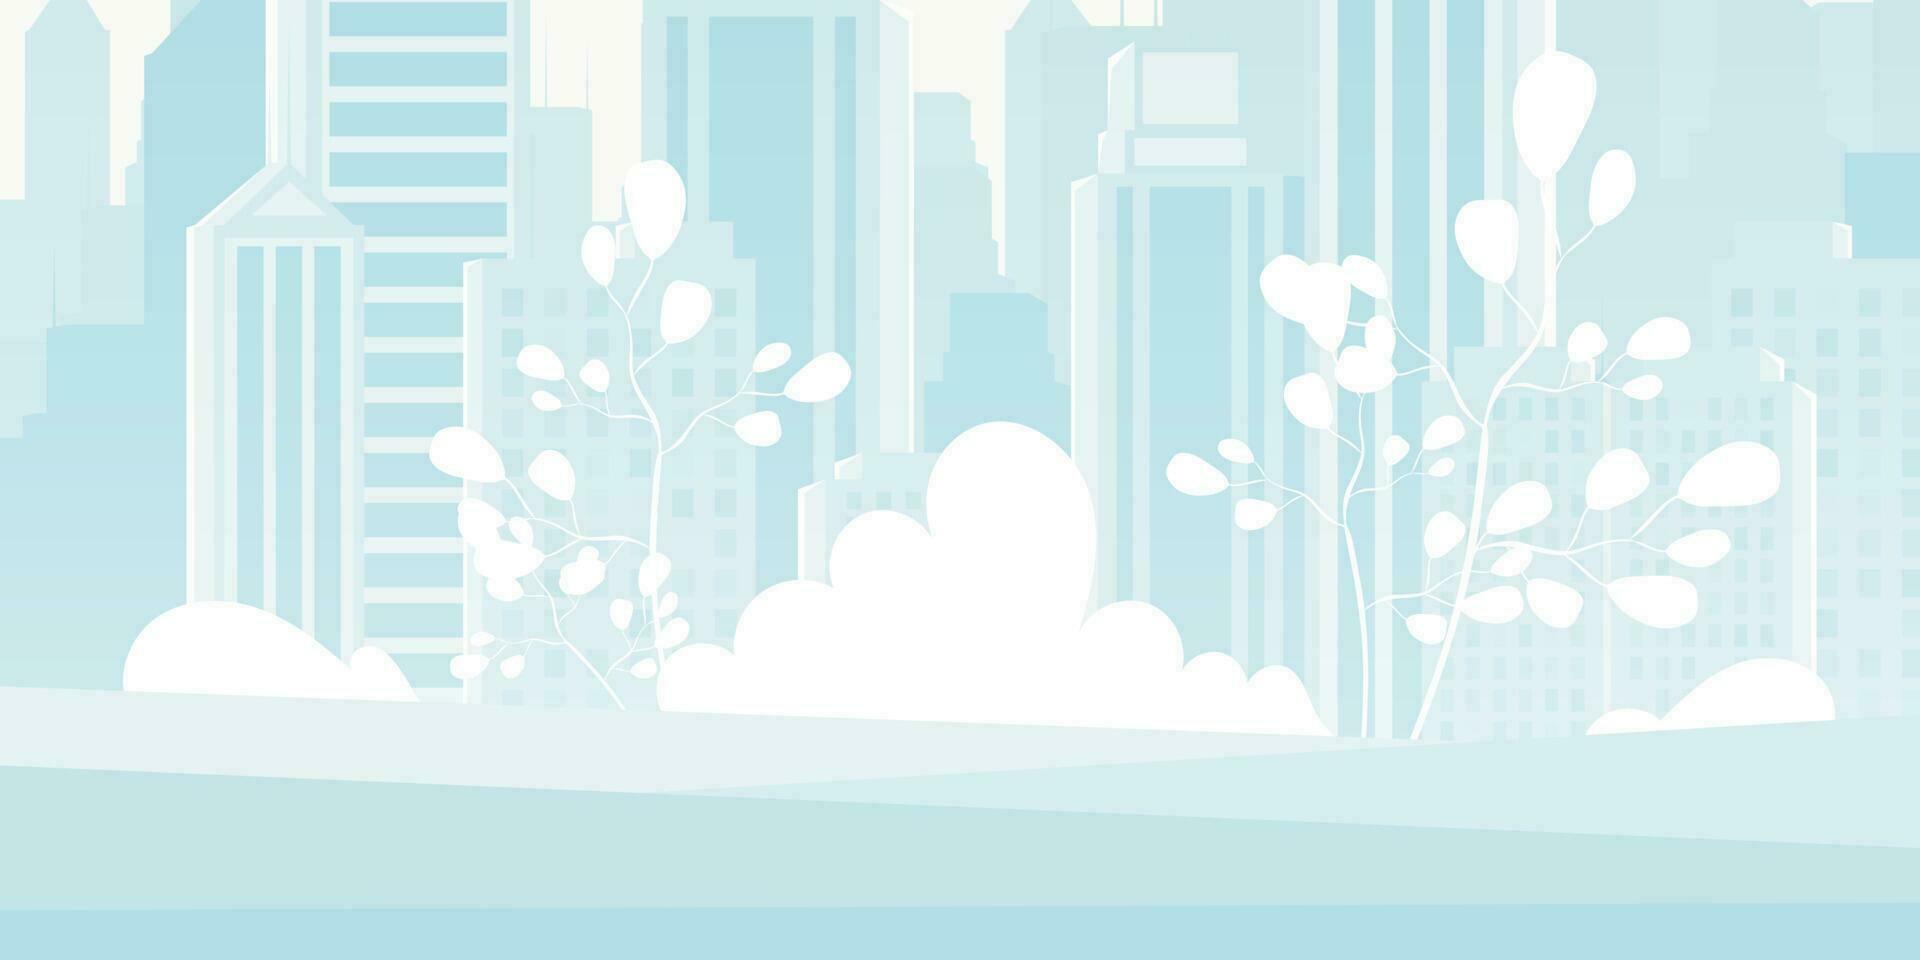 ville dans bleu. large affiche avec espace pour votre personnage. vecteur illustration dans dessin animé style.